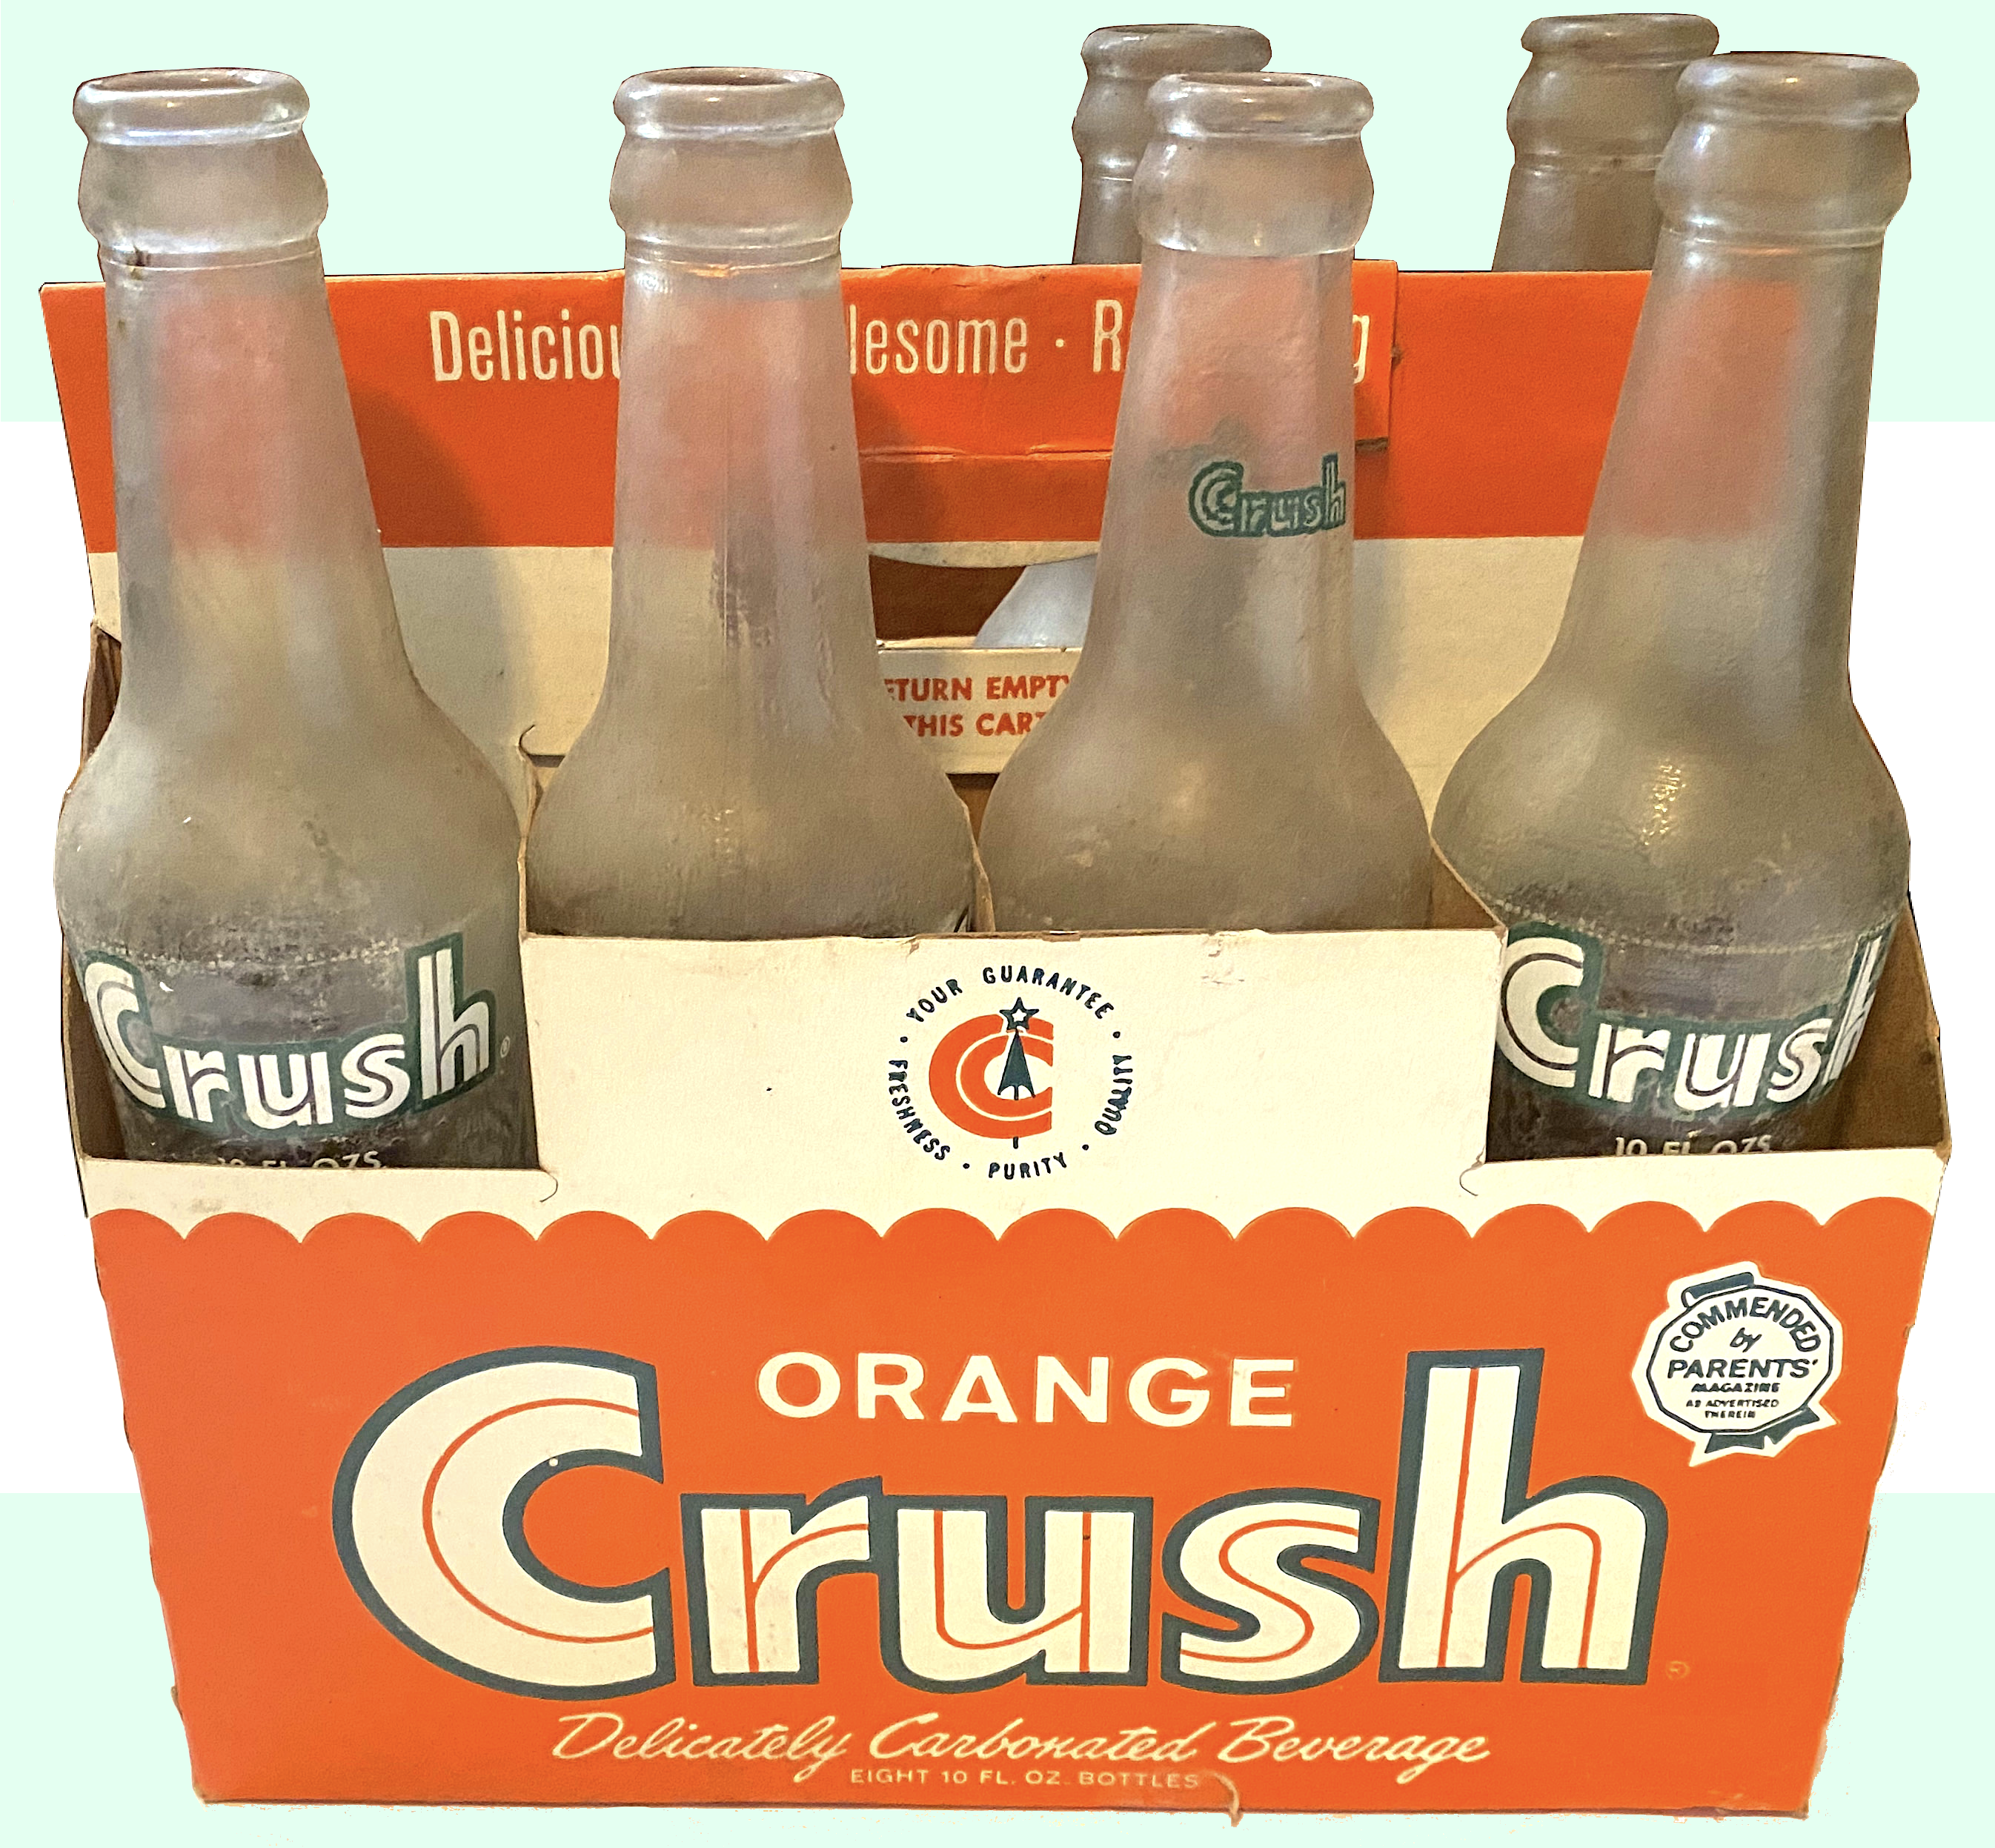 Orange Crush Co., est. 1911